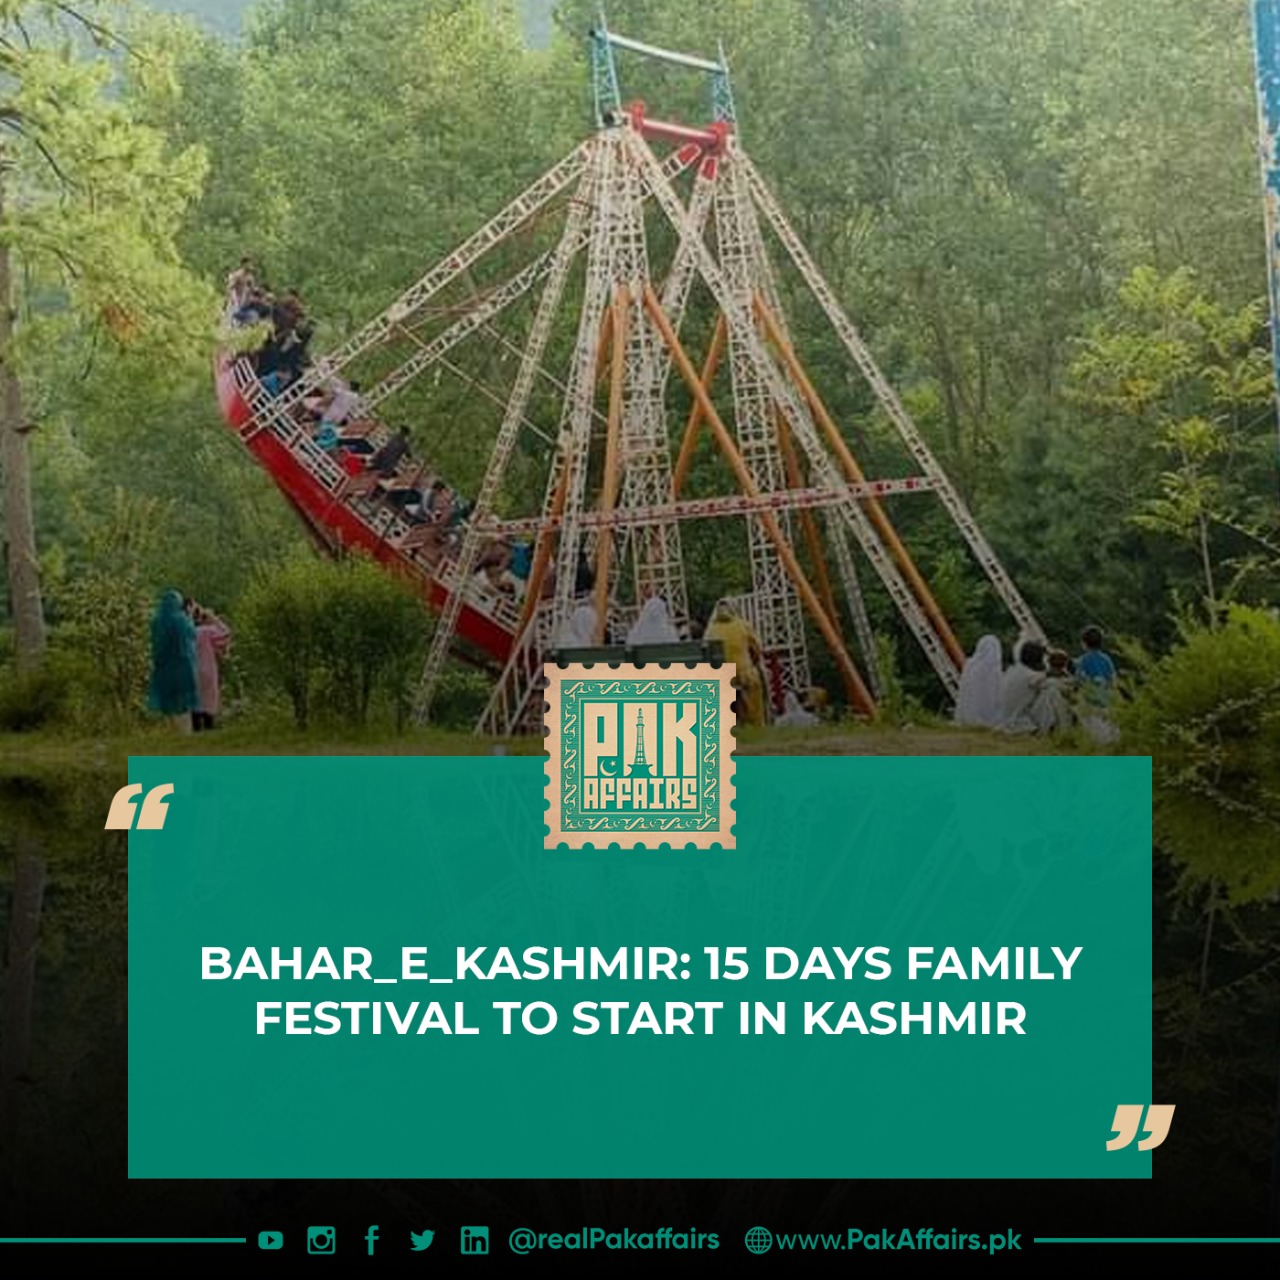 Bahar_E_Kashmir: 15 days family festival to start in Kashmir